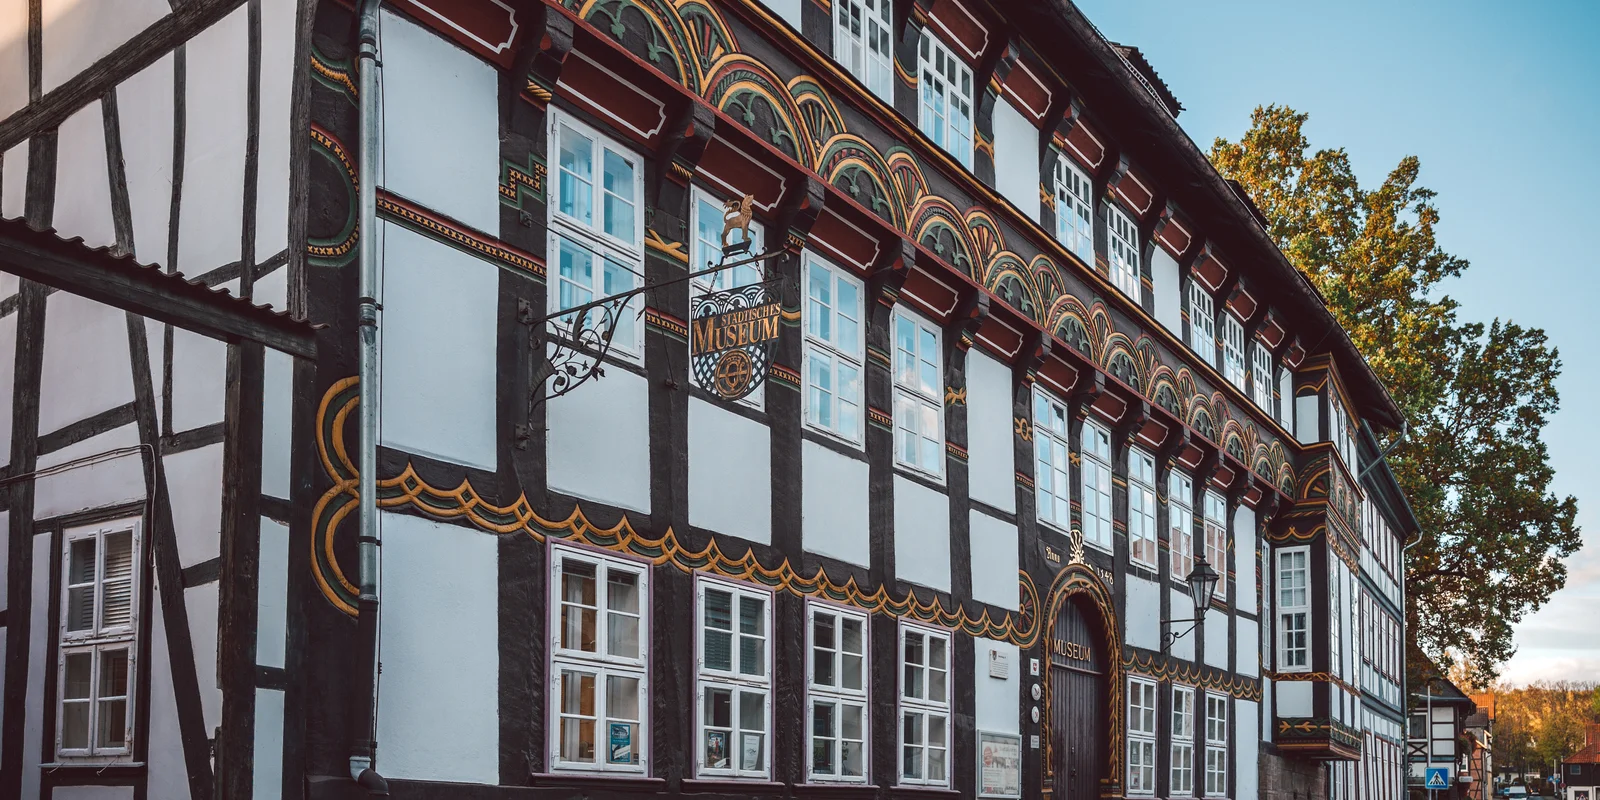 Fassade de Stadtmuseum Einbeck (ein reich geschmücktes Fachwerkhaus)